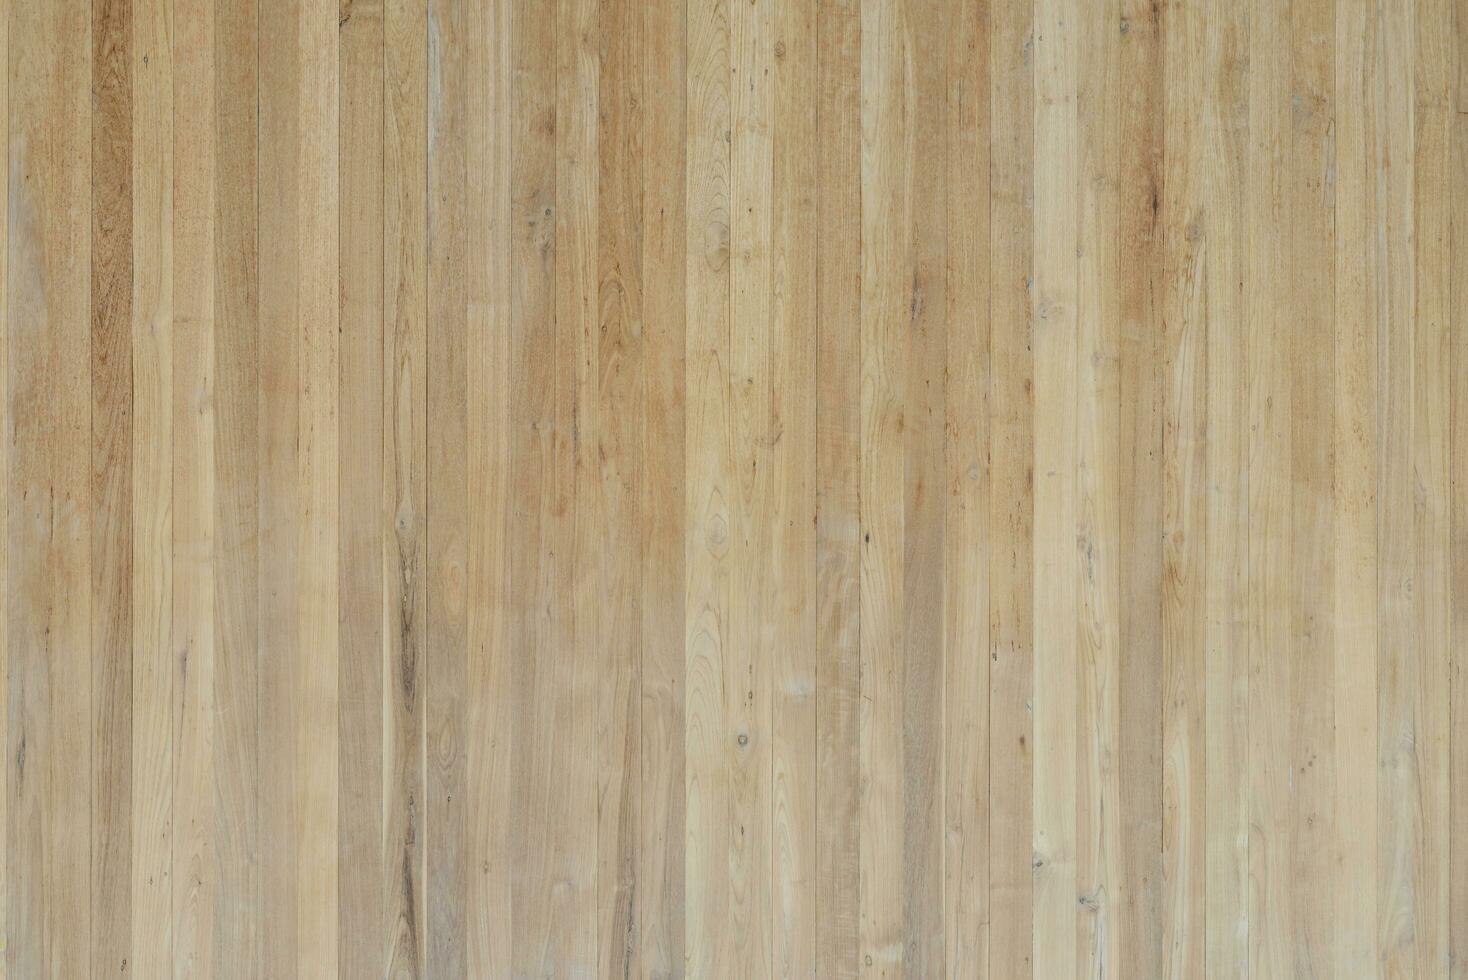 hout planken gebruik voor vloer, muur of achtergrond foto